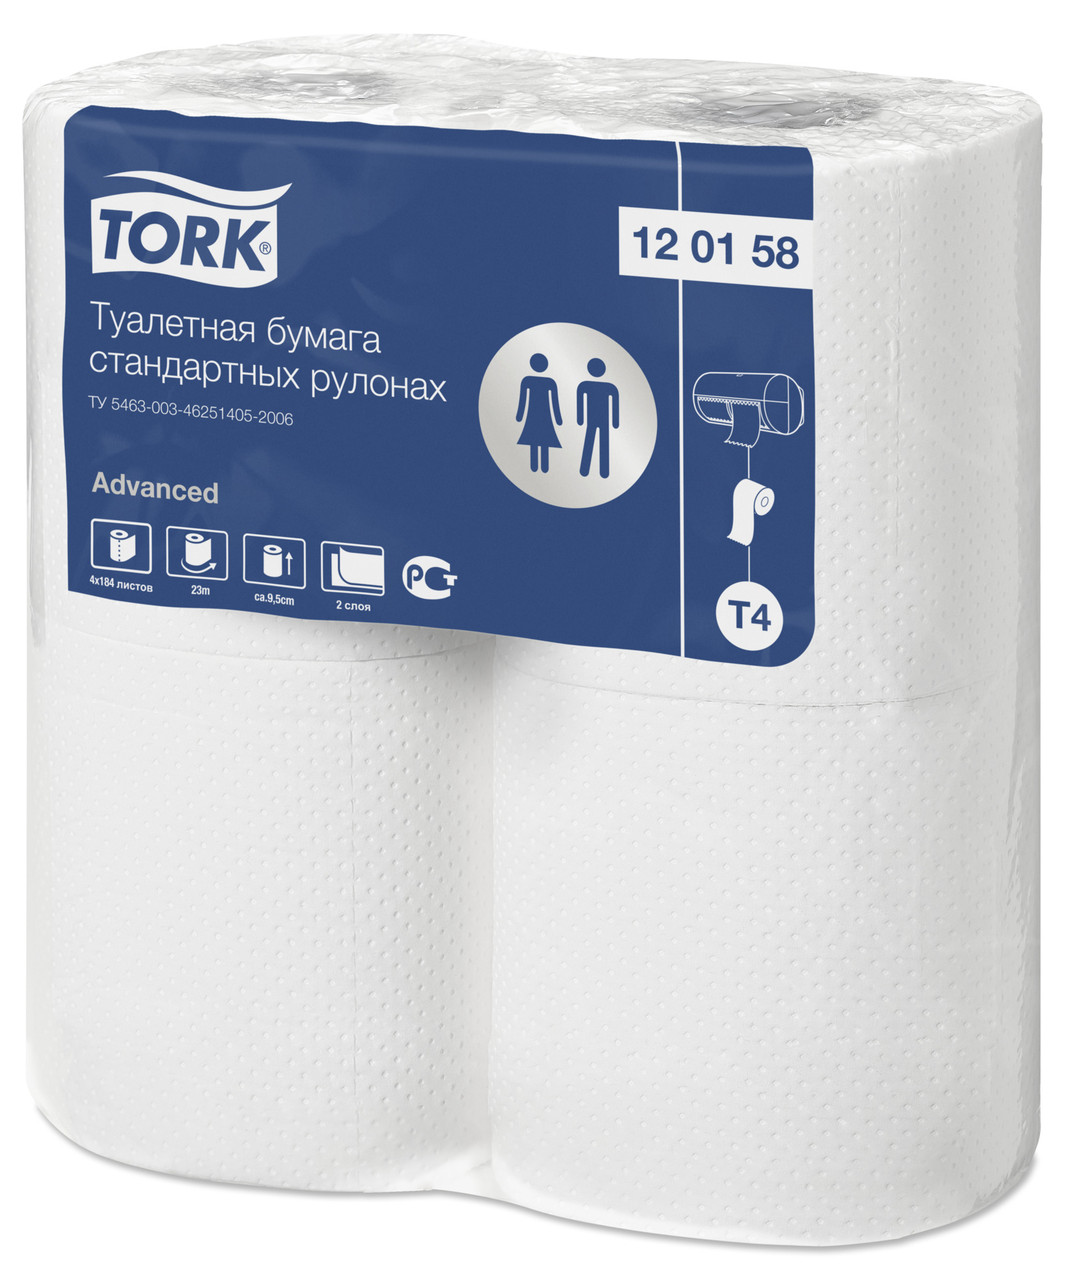 Tork туалетная бумага в стандартных рулонах 120158